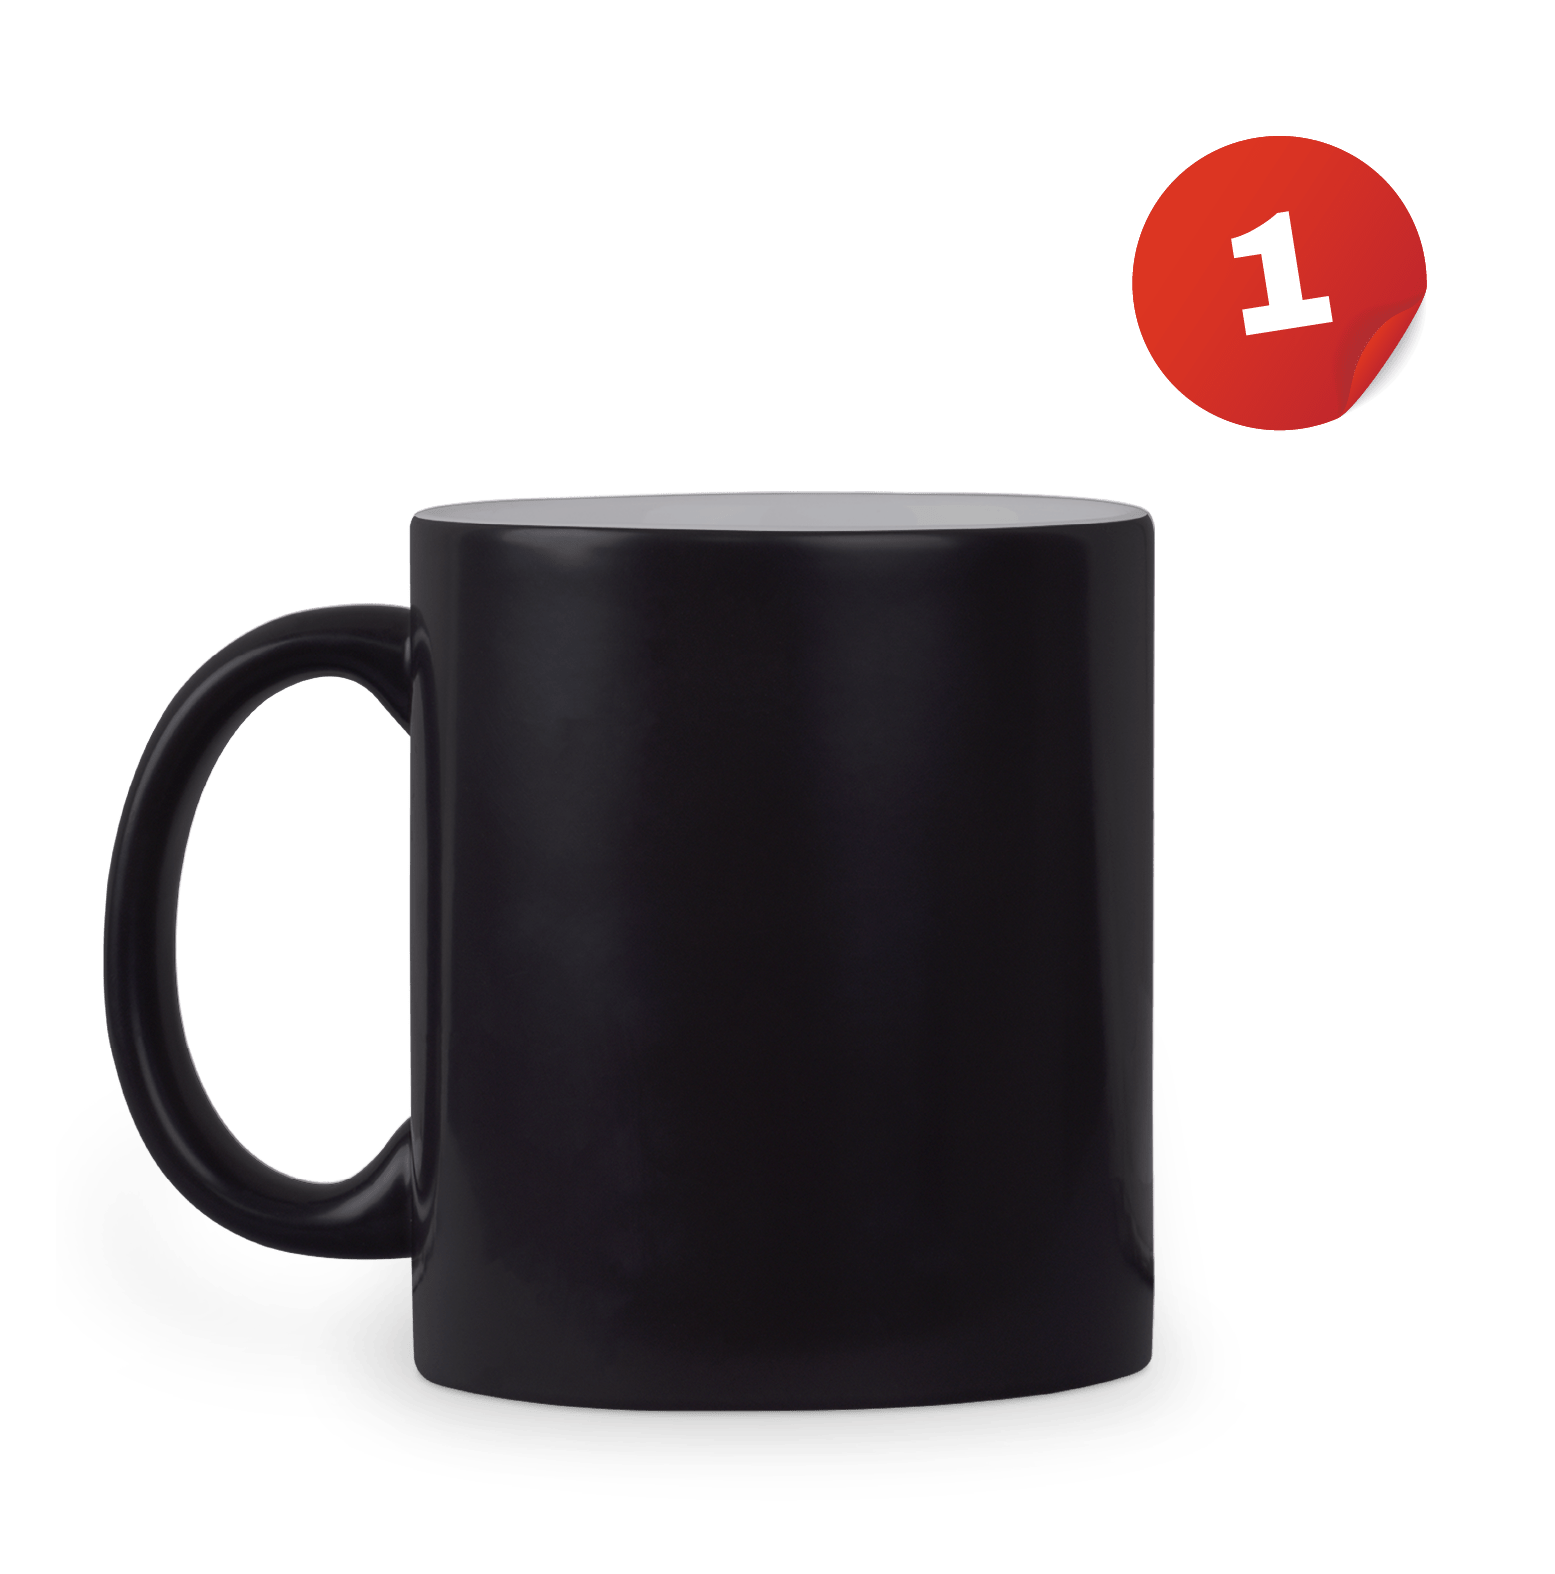 The 🔥UNT - Magic Mug